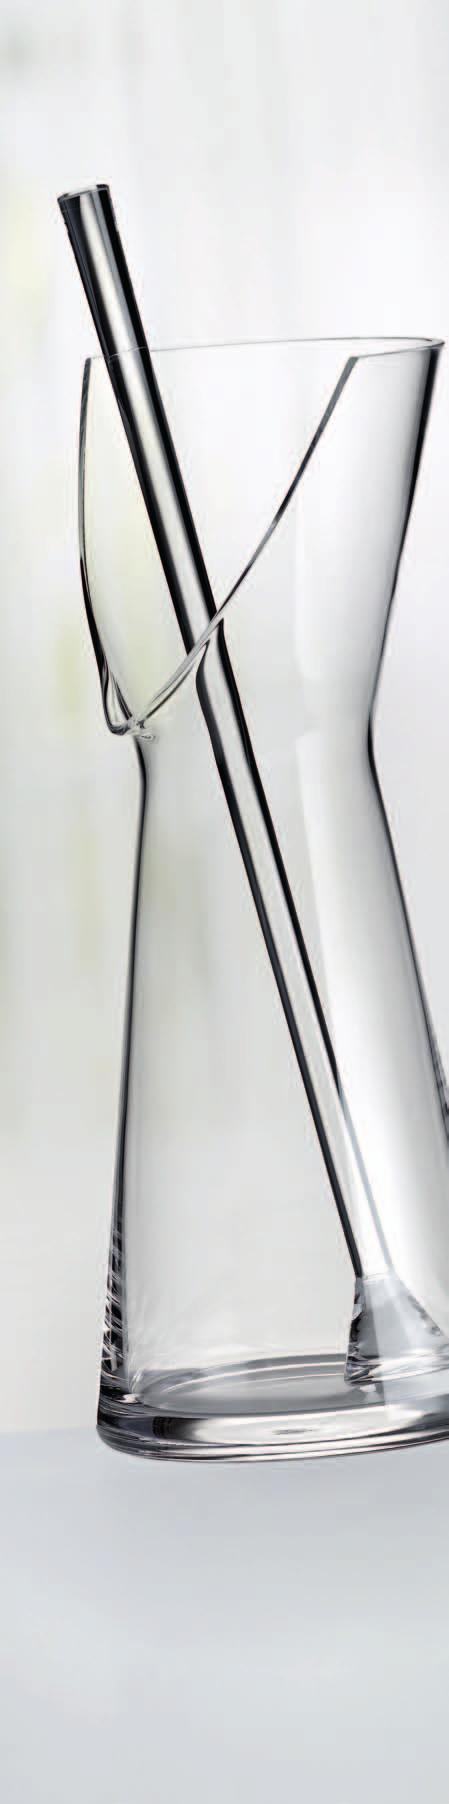 48 49 DINING Klein, aber mit System Victorinox C40 Den kleinen weißen SwissClassic Messerblock gibt es auch mit Farbsystem. Im Profibereich unterscheiden die Spezialisten ihre Messer durch Farben.